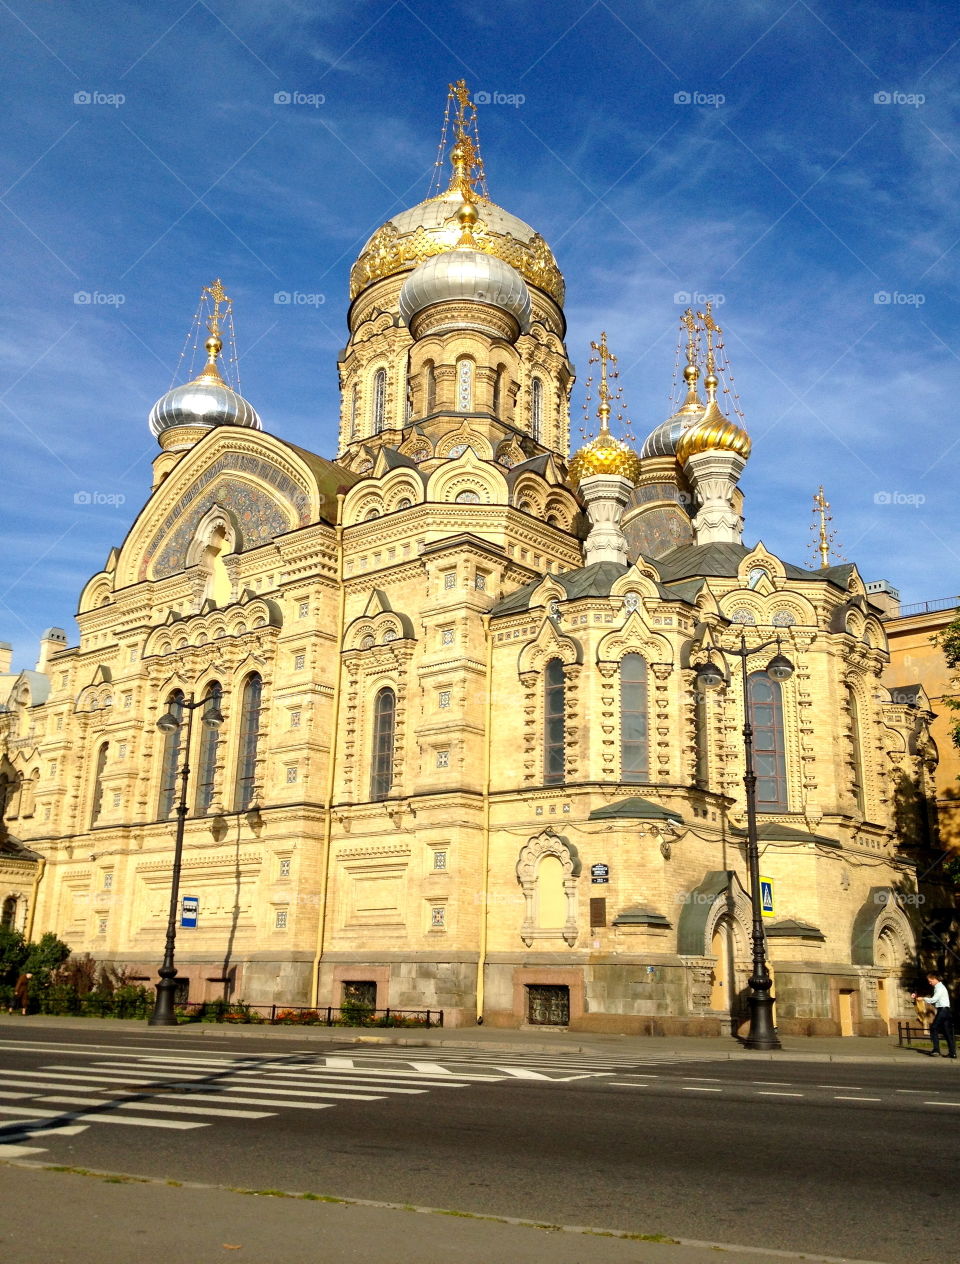 St. Petersburg 